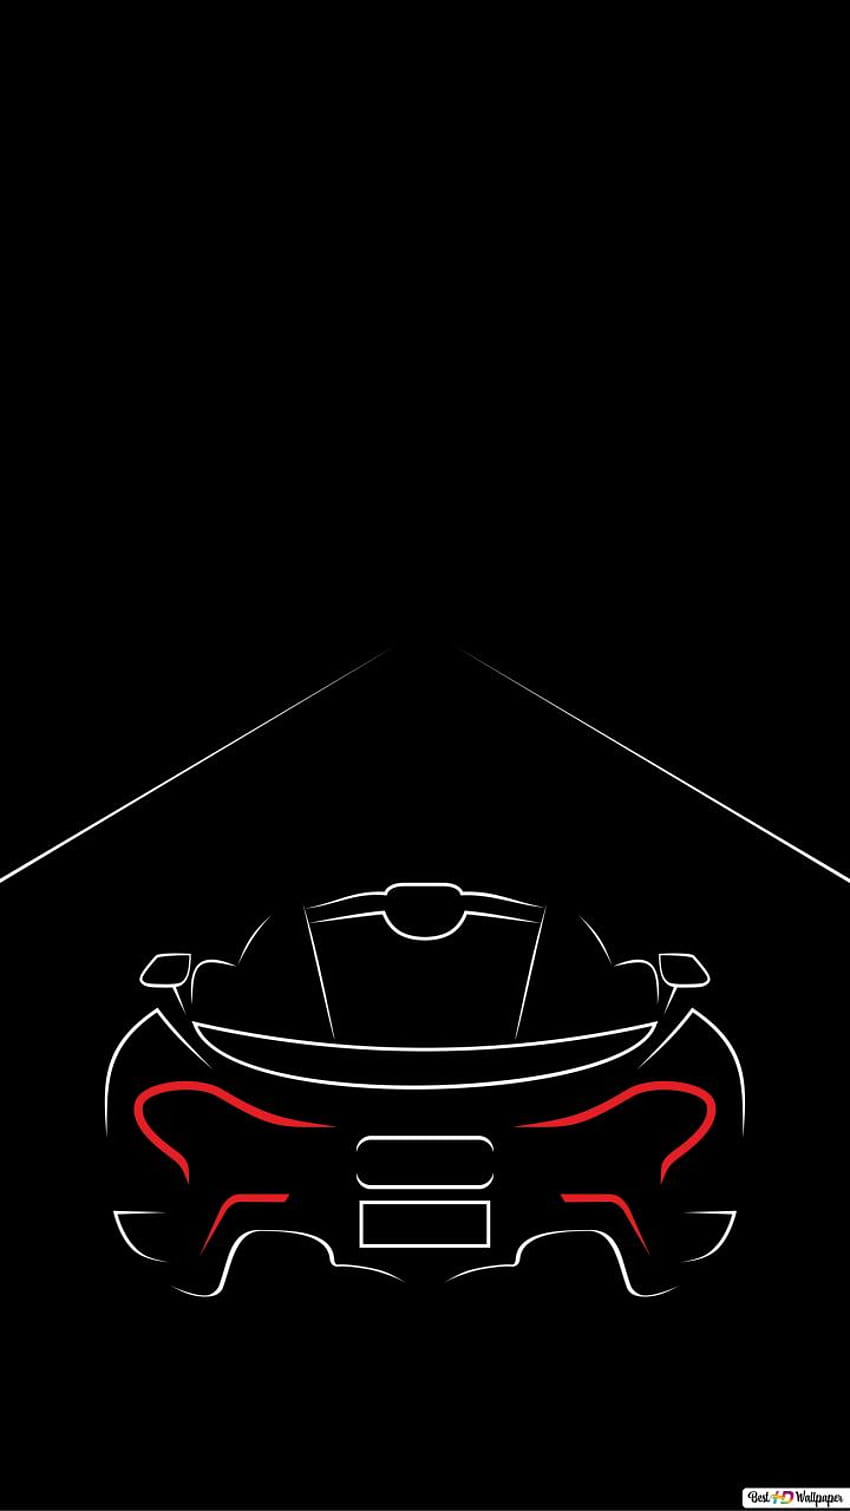 McLaren đen, 720x1280 oled HD điện thoại nền | Pxfuel - Bạn yêu thích những chiếc siêu xe đầy mạnh mẽ và sang trọng? Hãy thưởng thức hình ảnh McLaren đen trên nền đen 720x1280 oled HD để cảm nhận được toàn bộ vẻ đẹp và sự hoàn hảo của dòng siêu xe này. Từ thiết kế đến màu sắc, tất cả đều xuất sắc và không có điểm gì để chê. 